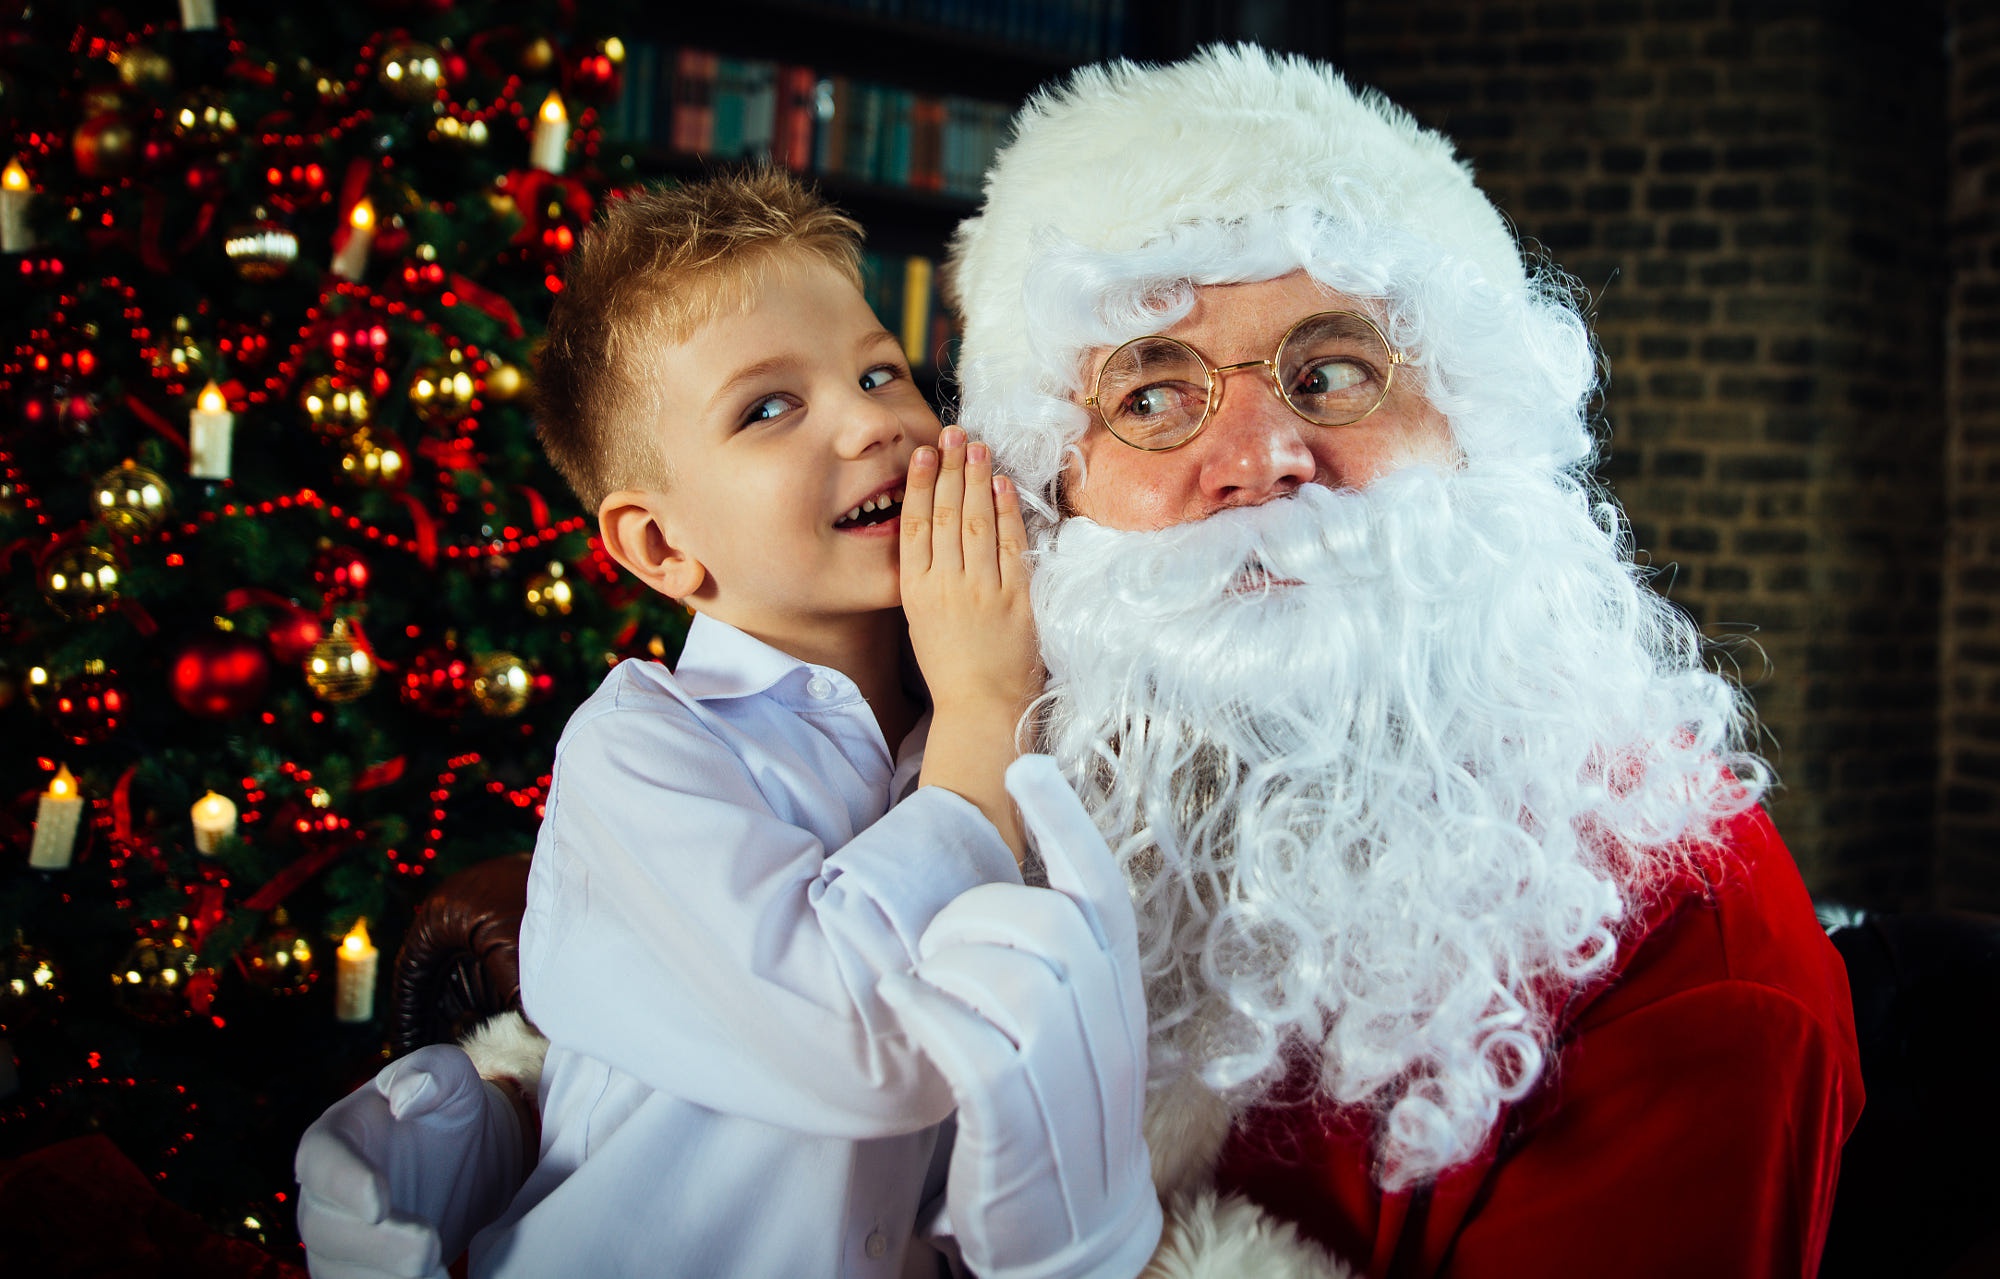 Download mobile wallpaper Christmas, Holiday, Christmas Tree, Santa for free.